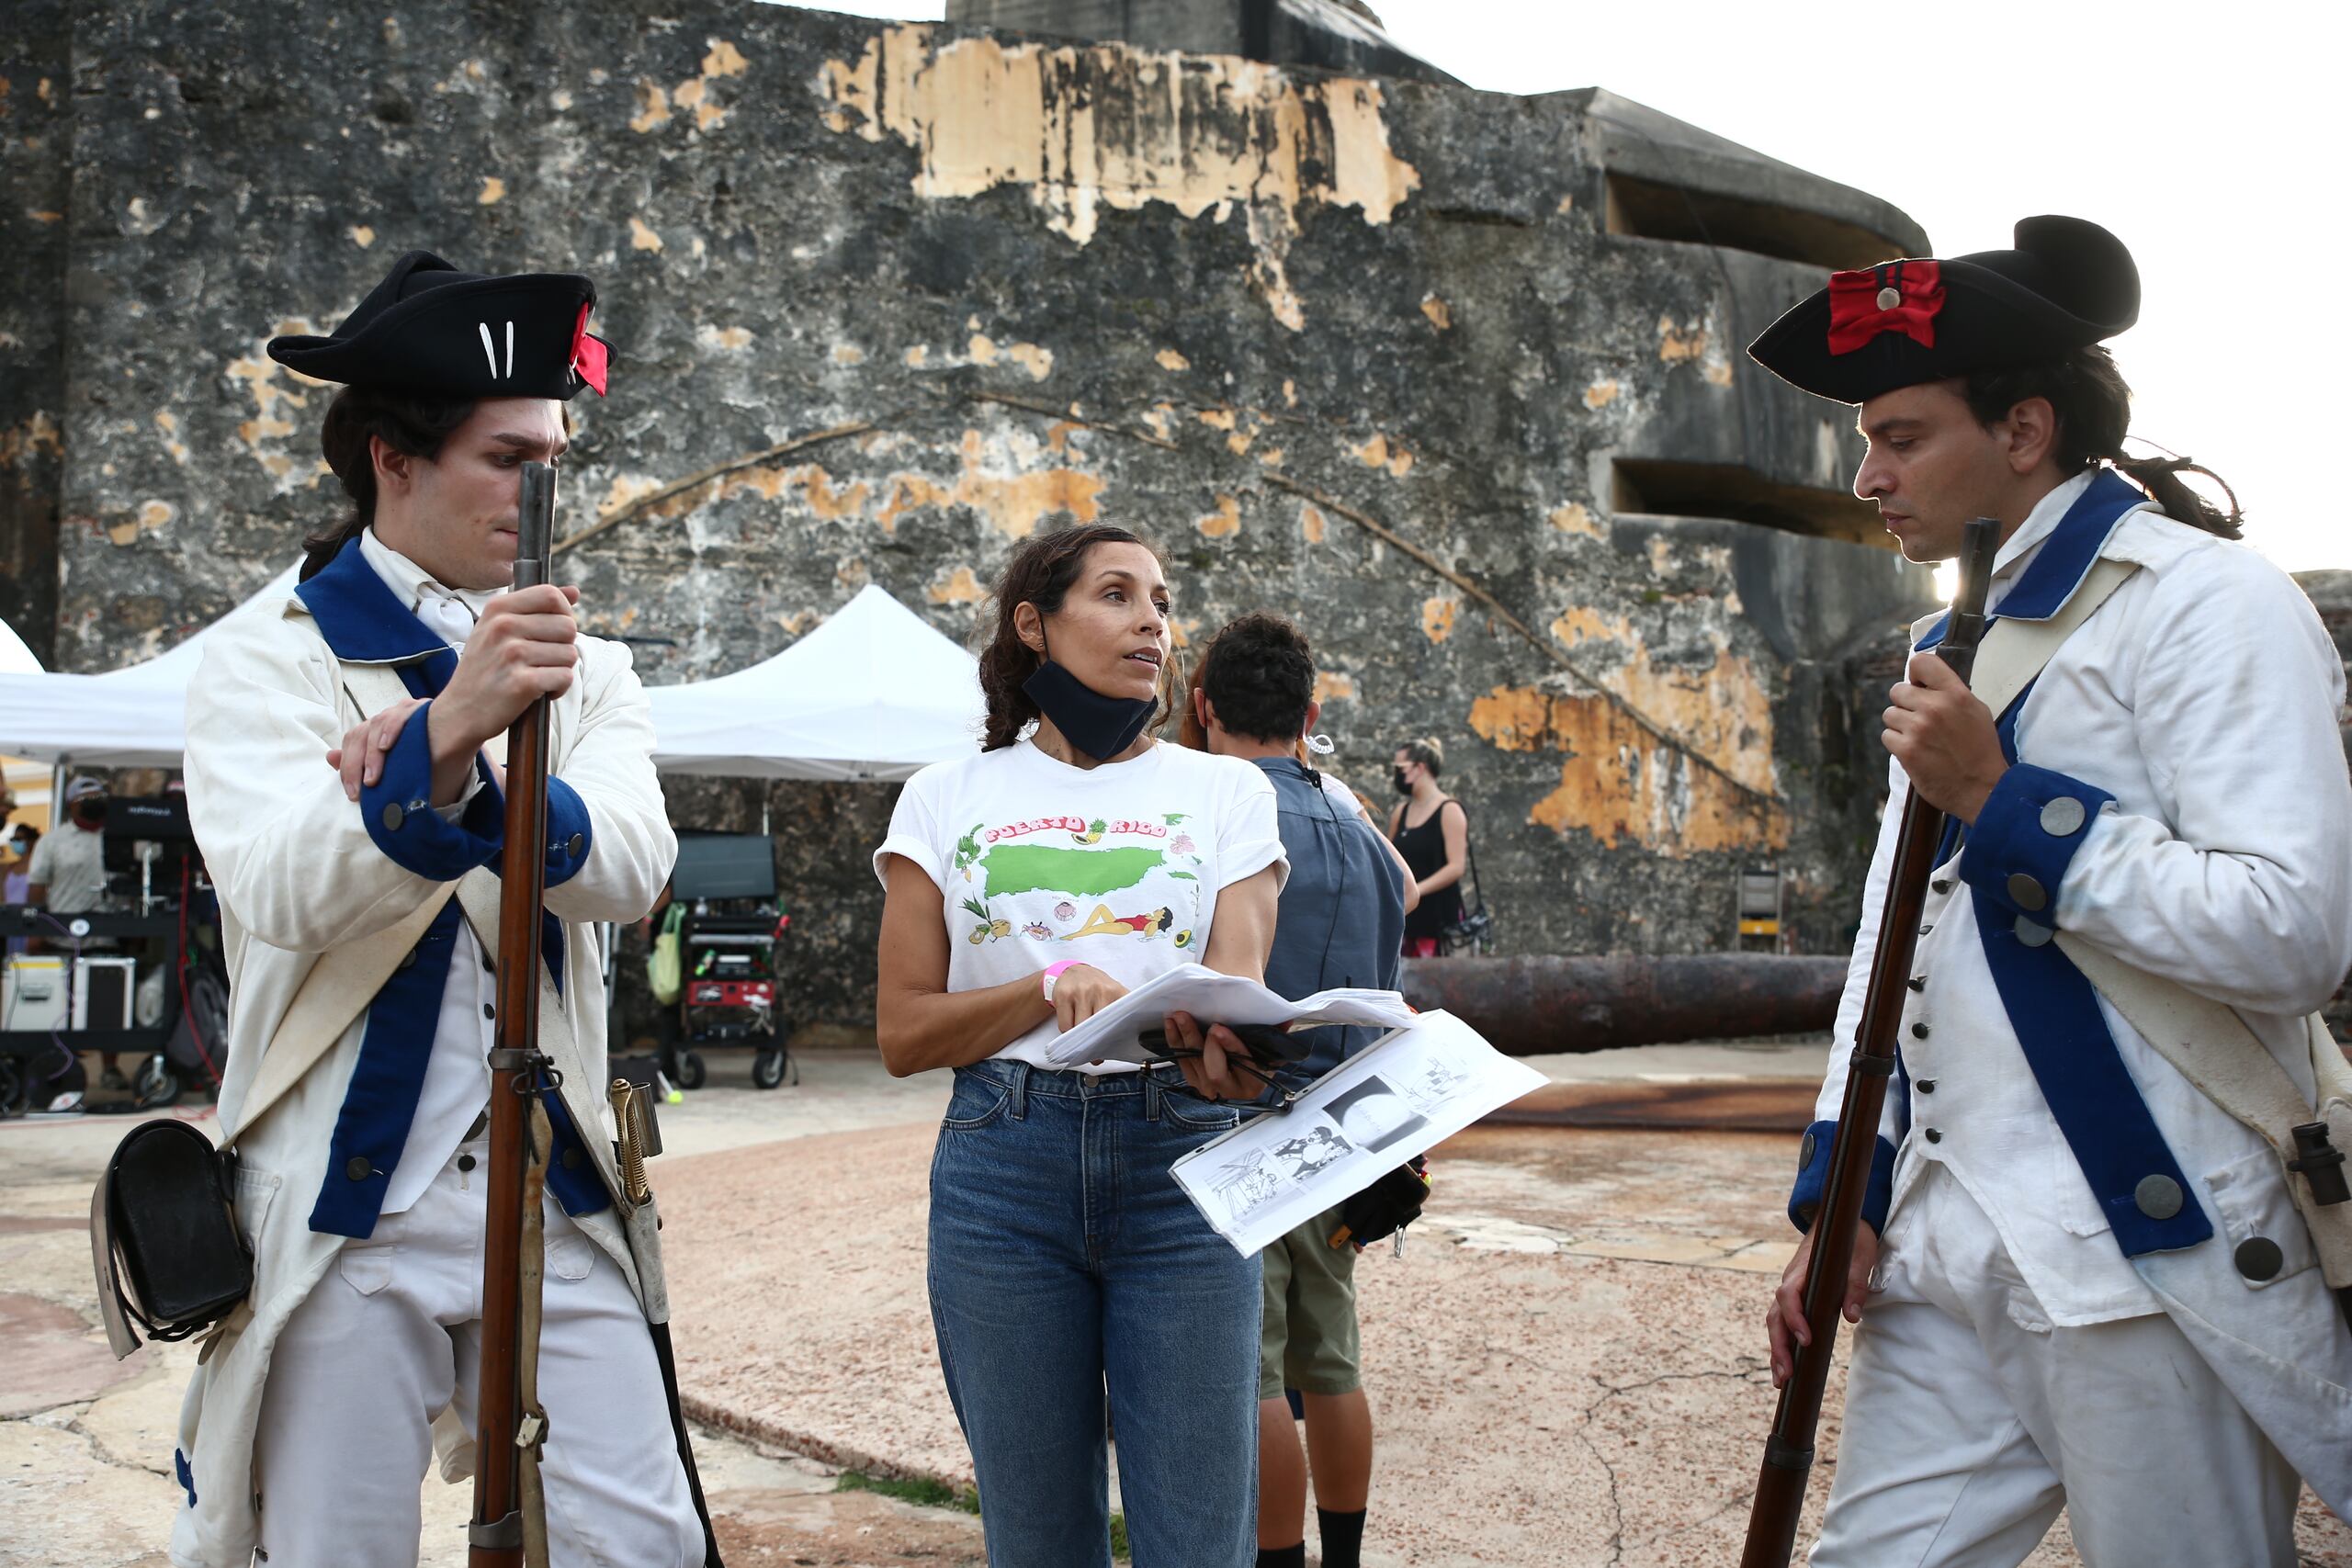 La directora  Mariem Pérez Riera durante el rodaje del documental sobre la historia de la fundación de la ciudad de San Juan titulado, "San Juan, más allá de las murallas".